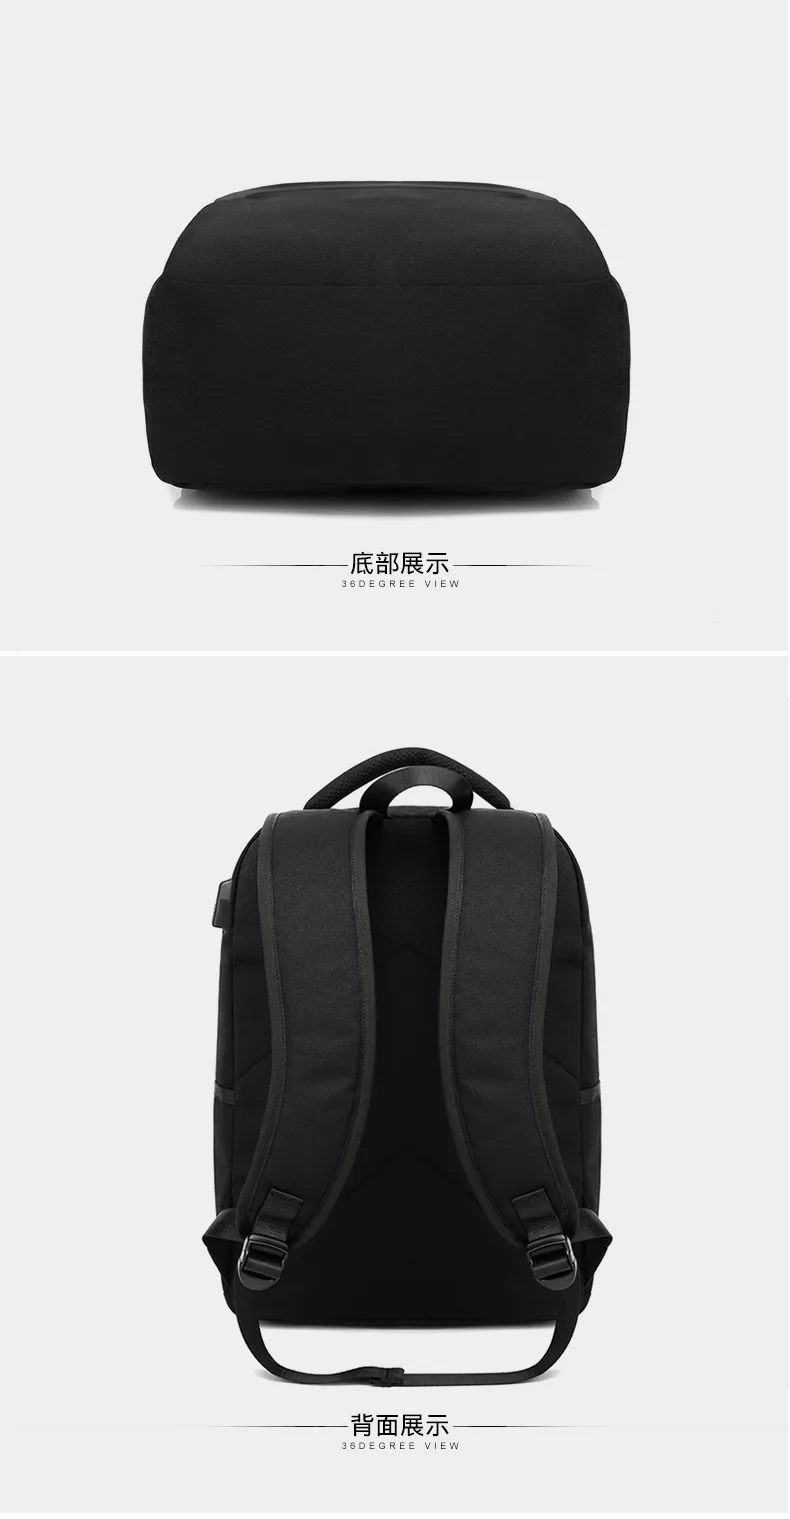 Для мужчин и wo Для мужчин рюкзак мода многофункциональный зарядка через usb Для мужчин 15,6 дюймовый ноутбук рюкзаки Bisiness сумка для Для мужчин